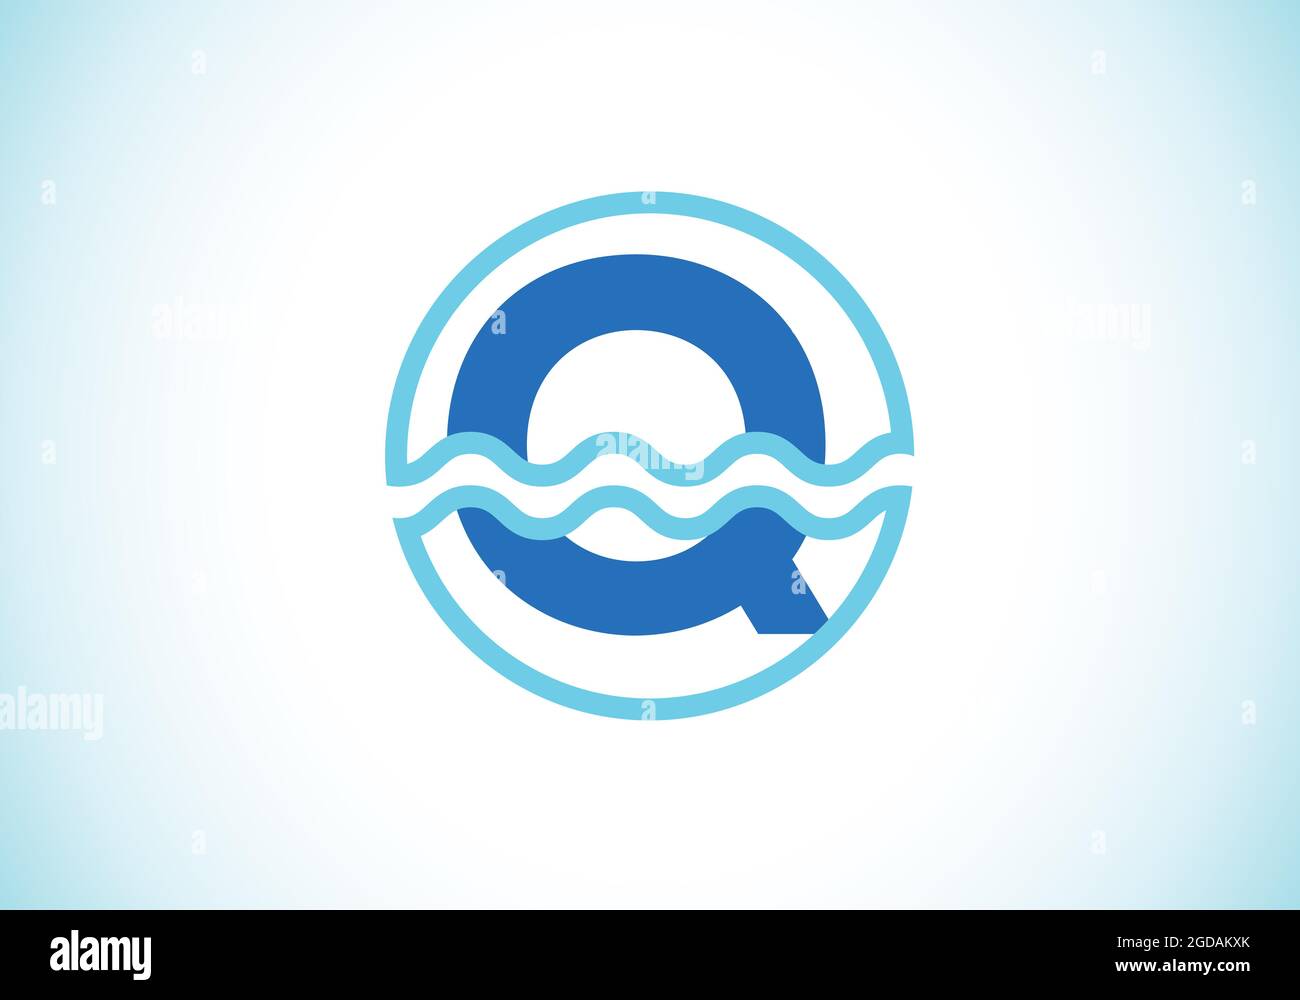 Initiale Q monogramme alphabet dans un cercle avec des vagues d'eau. Logo vague d'eau. Logo pour l'océan, les affaires liées à la mer et l'identité de l'entreprise Illustration de Vecteur